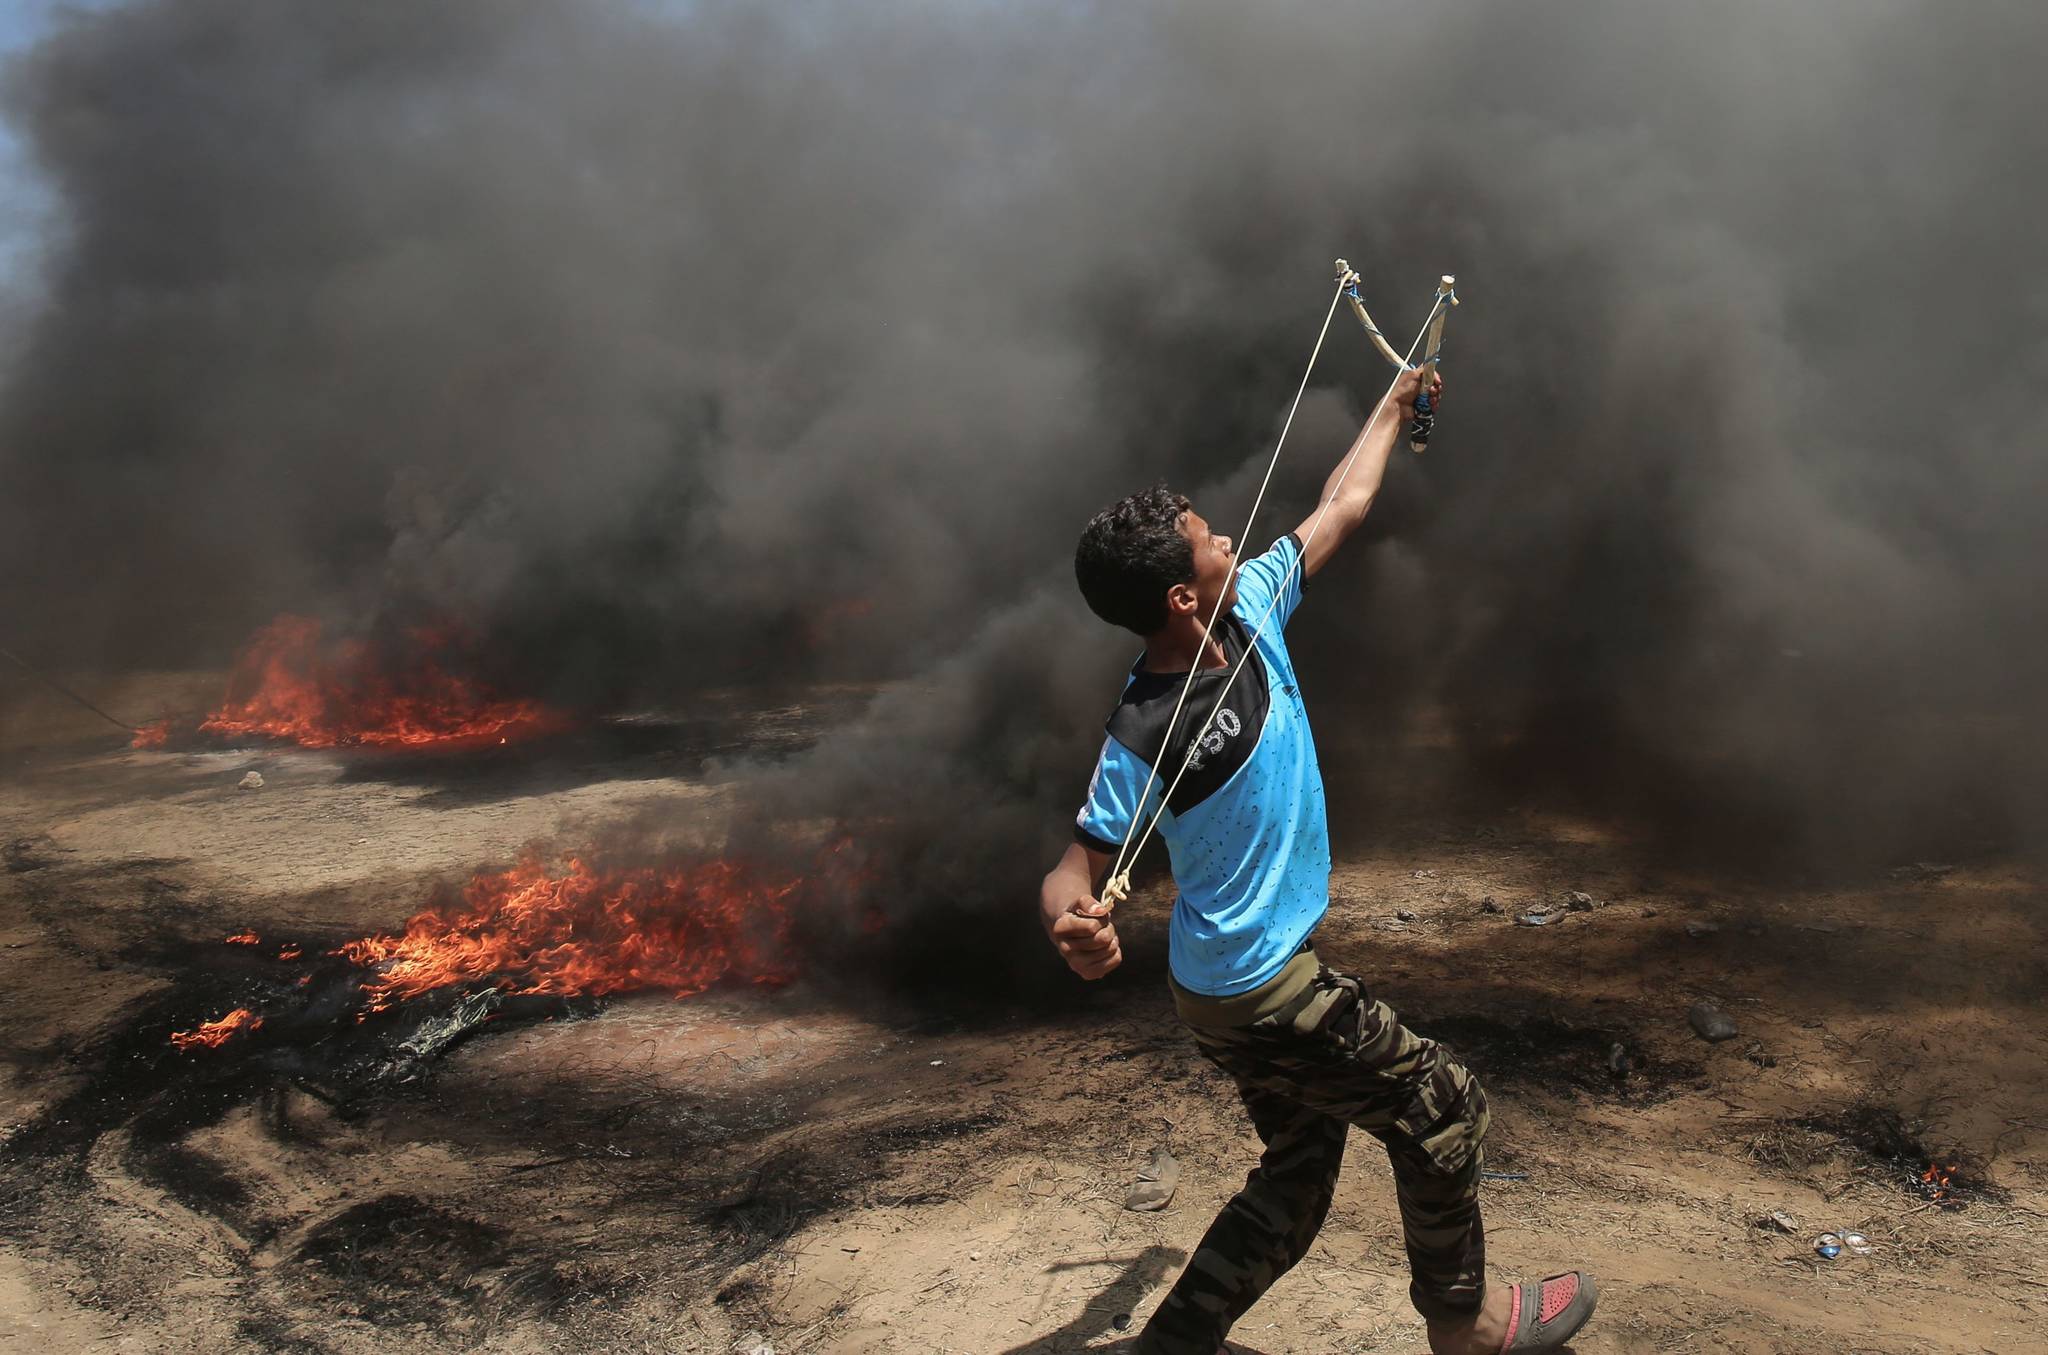  한 팔레스타인 청년이 14일 가자지구에서 이스라엘로 향해 새총을 쏘고 있다. [AFP=연합뉴스]